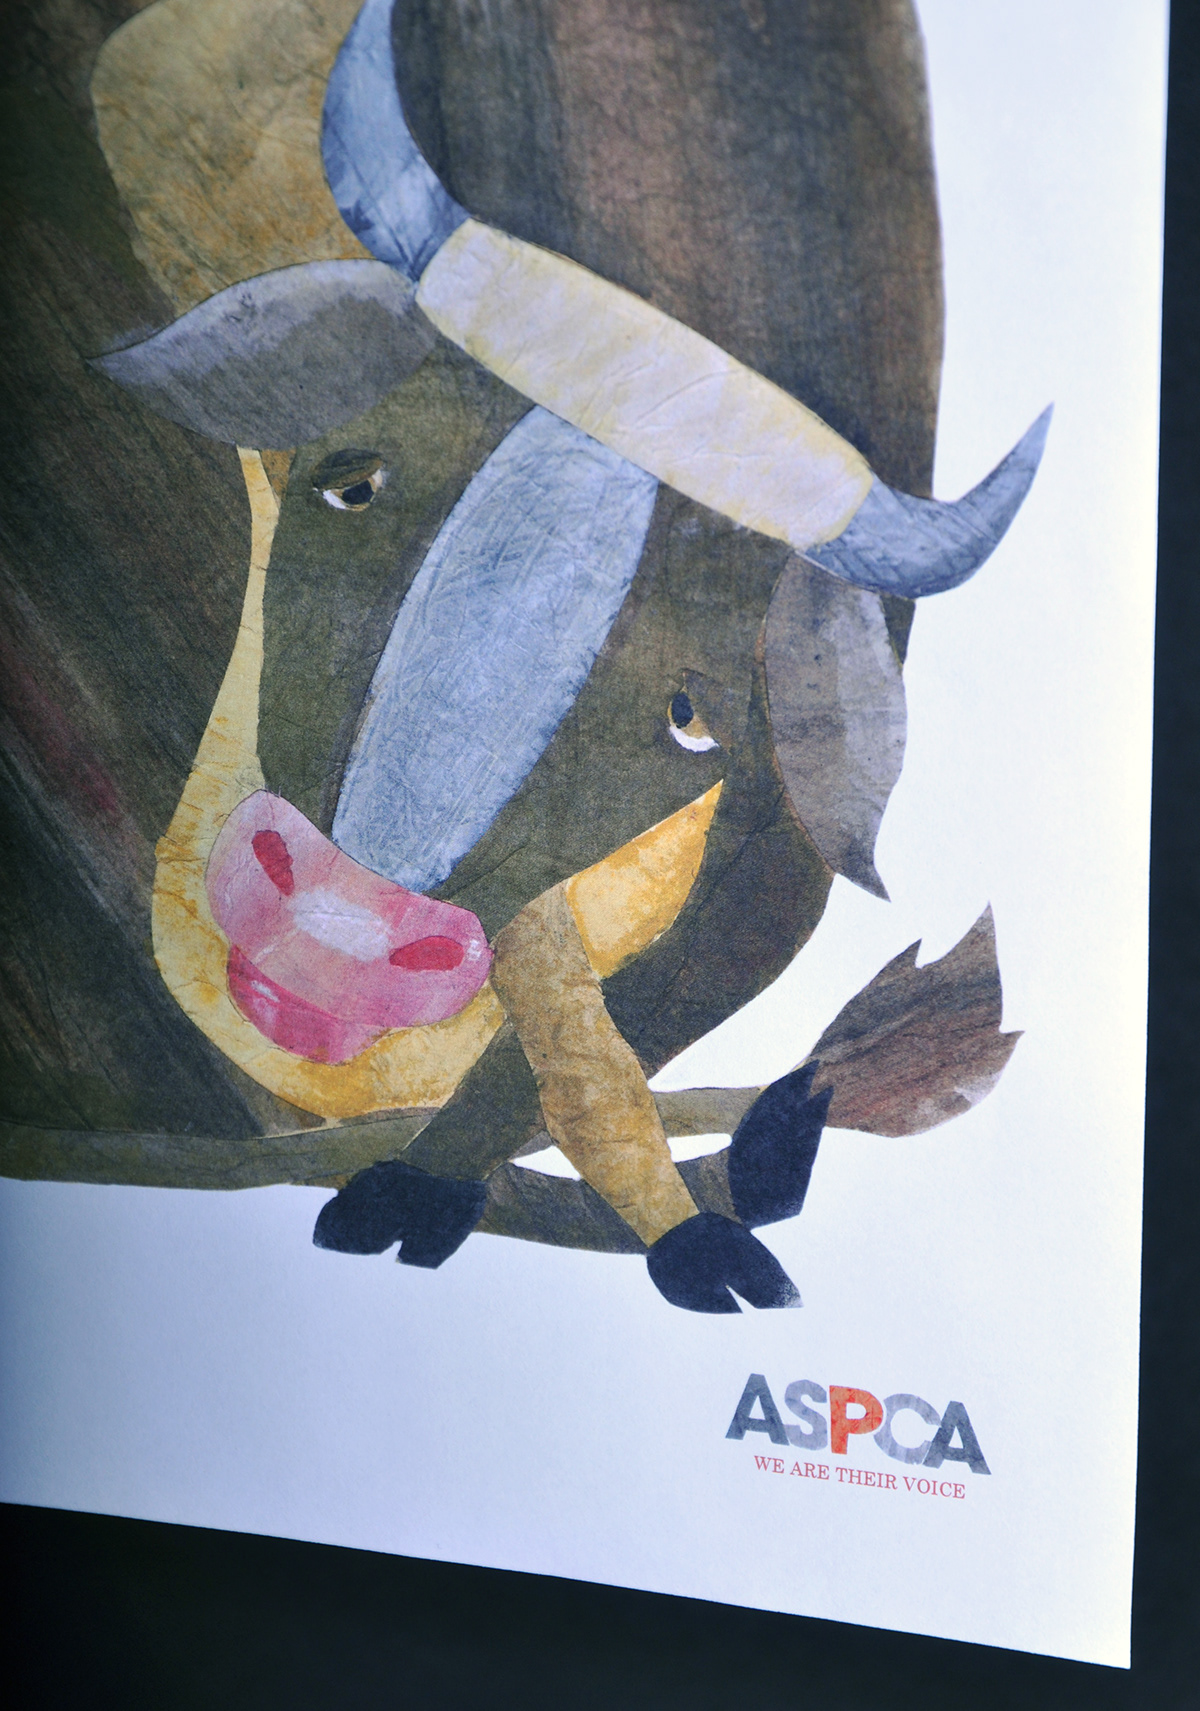 cow Factory Farming  ASPCA social cause Poster Design  handmade storybook